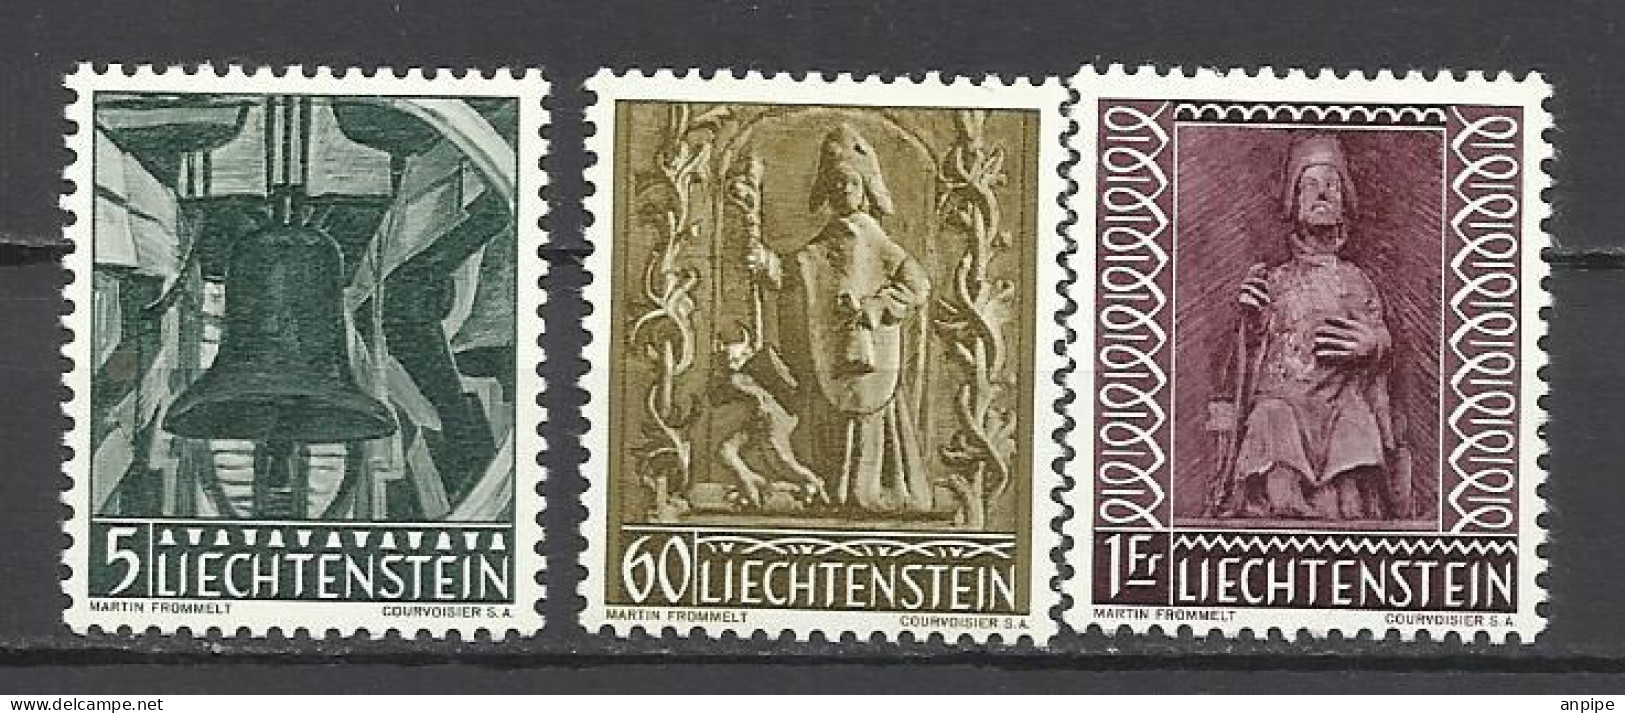 LIECHTENSTEIN, 1959 - Unused Stamps